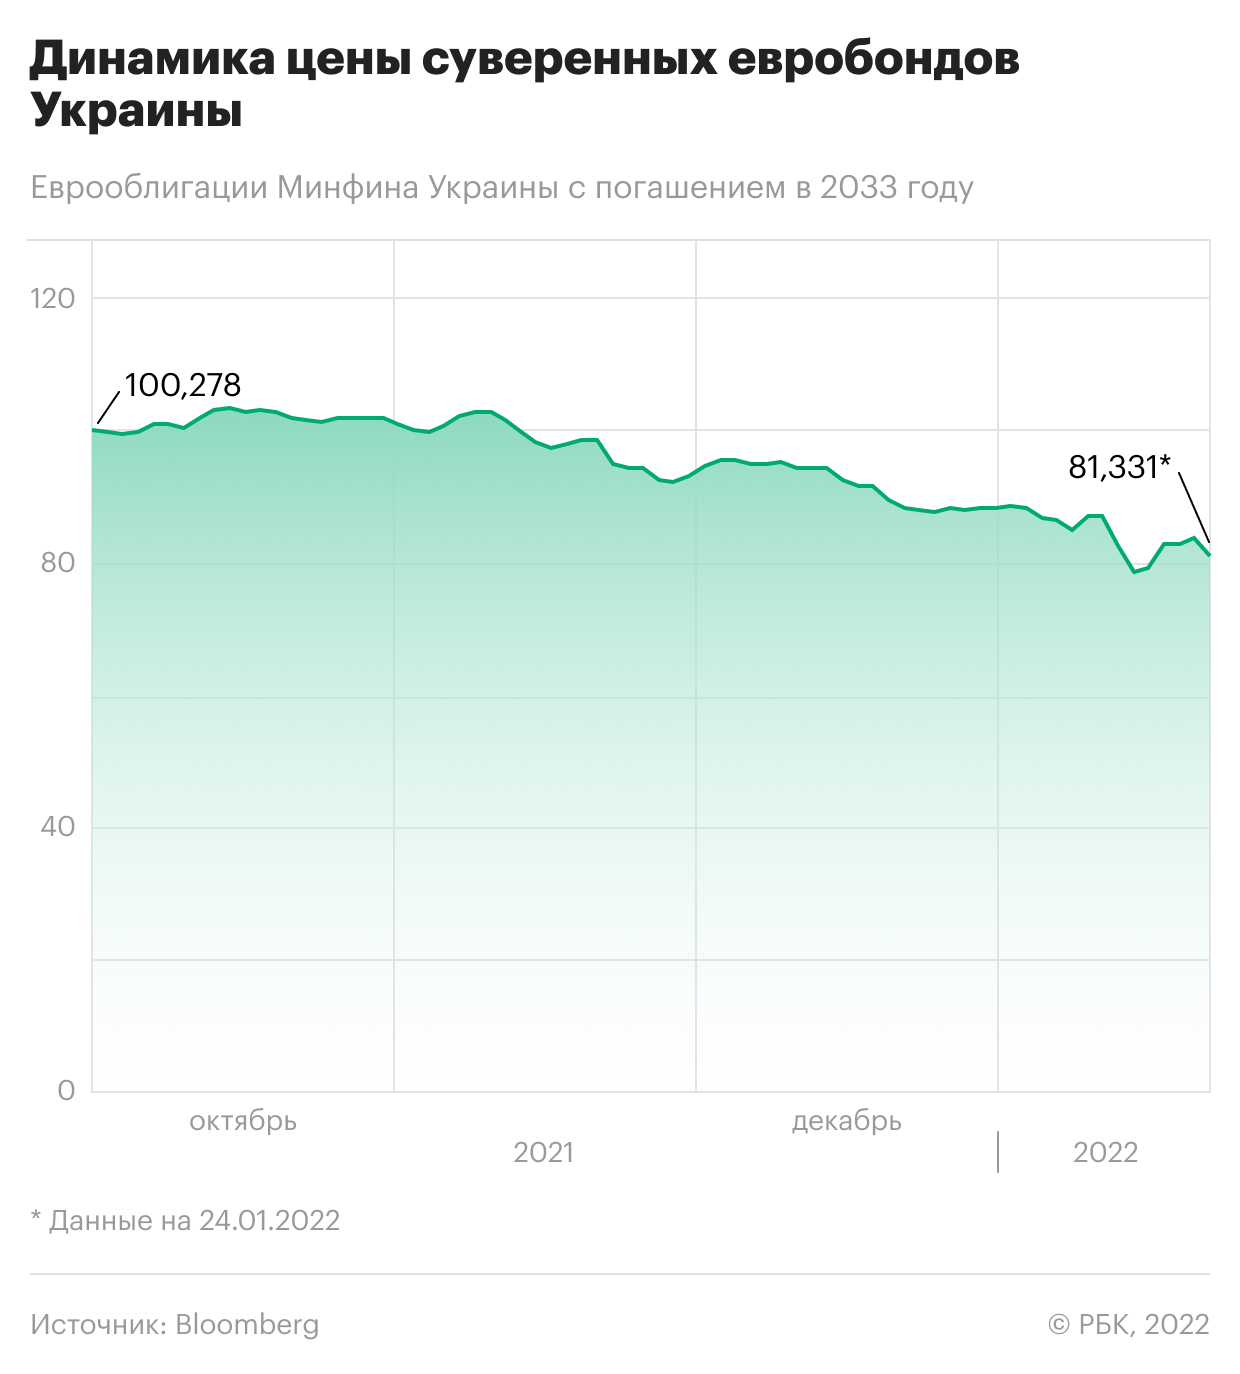 Как упали украинские рынки на фоне угрозы войны